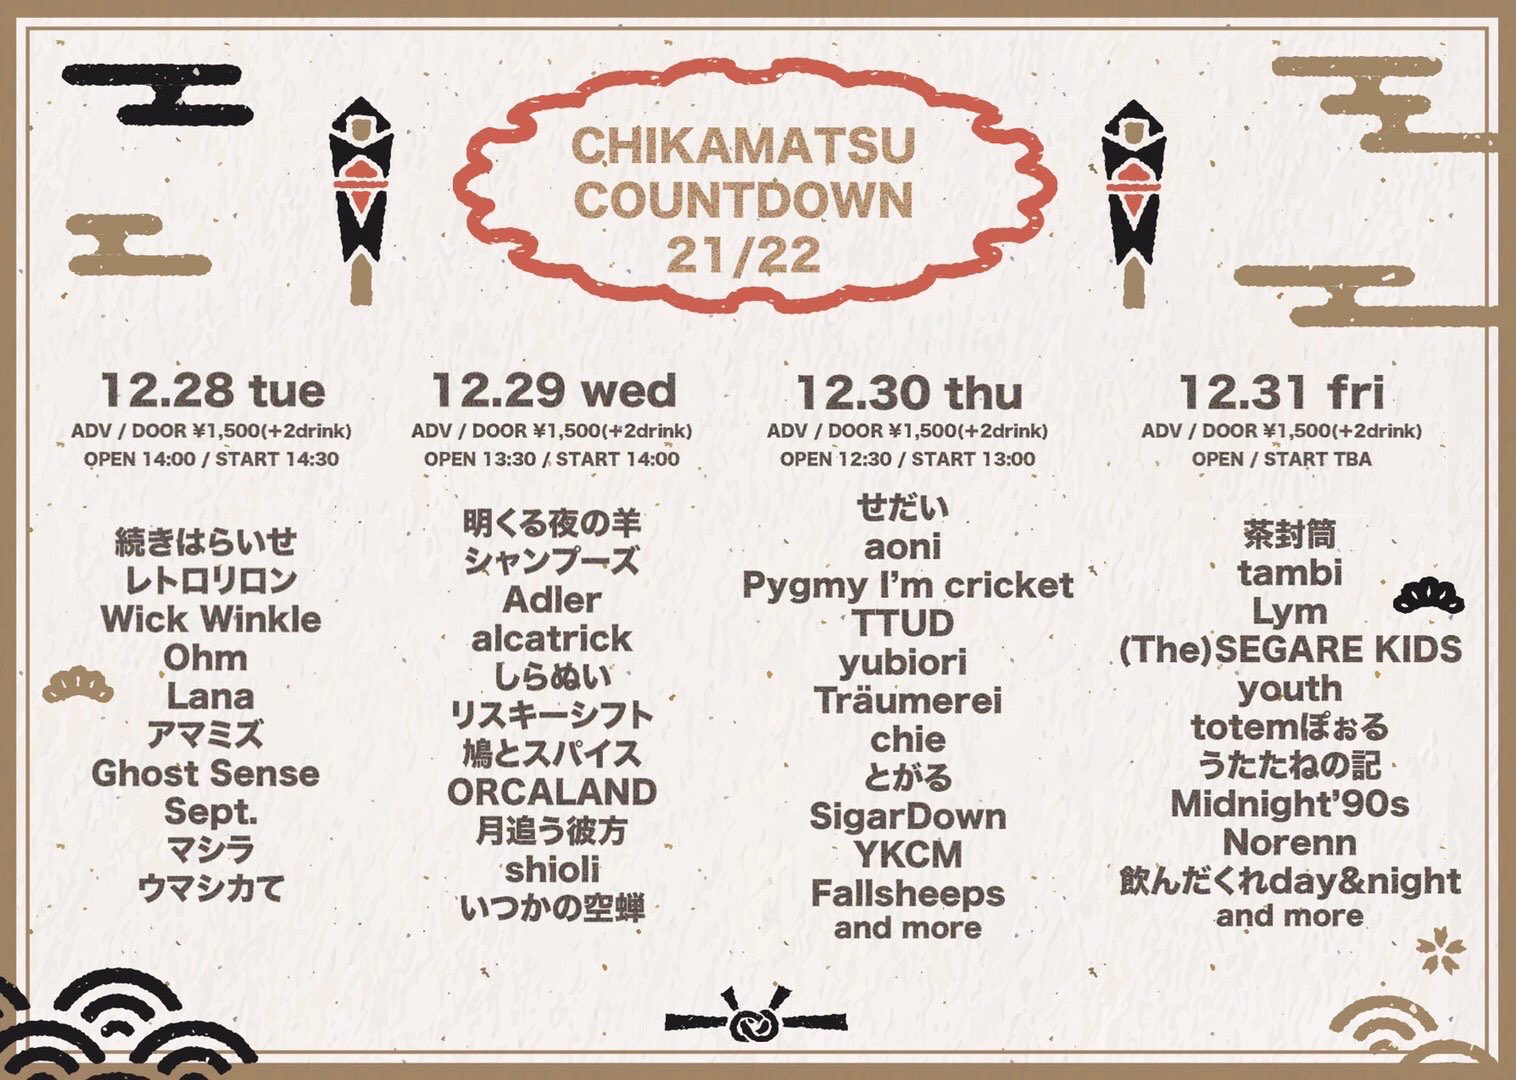 CHIKAMATSU COWNTDOWN 21/22